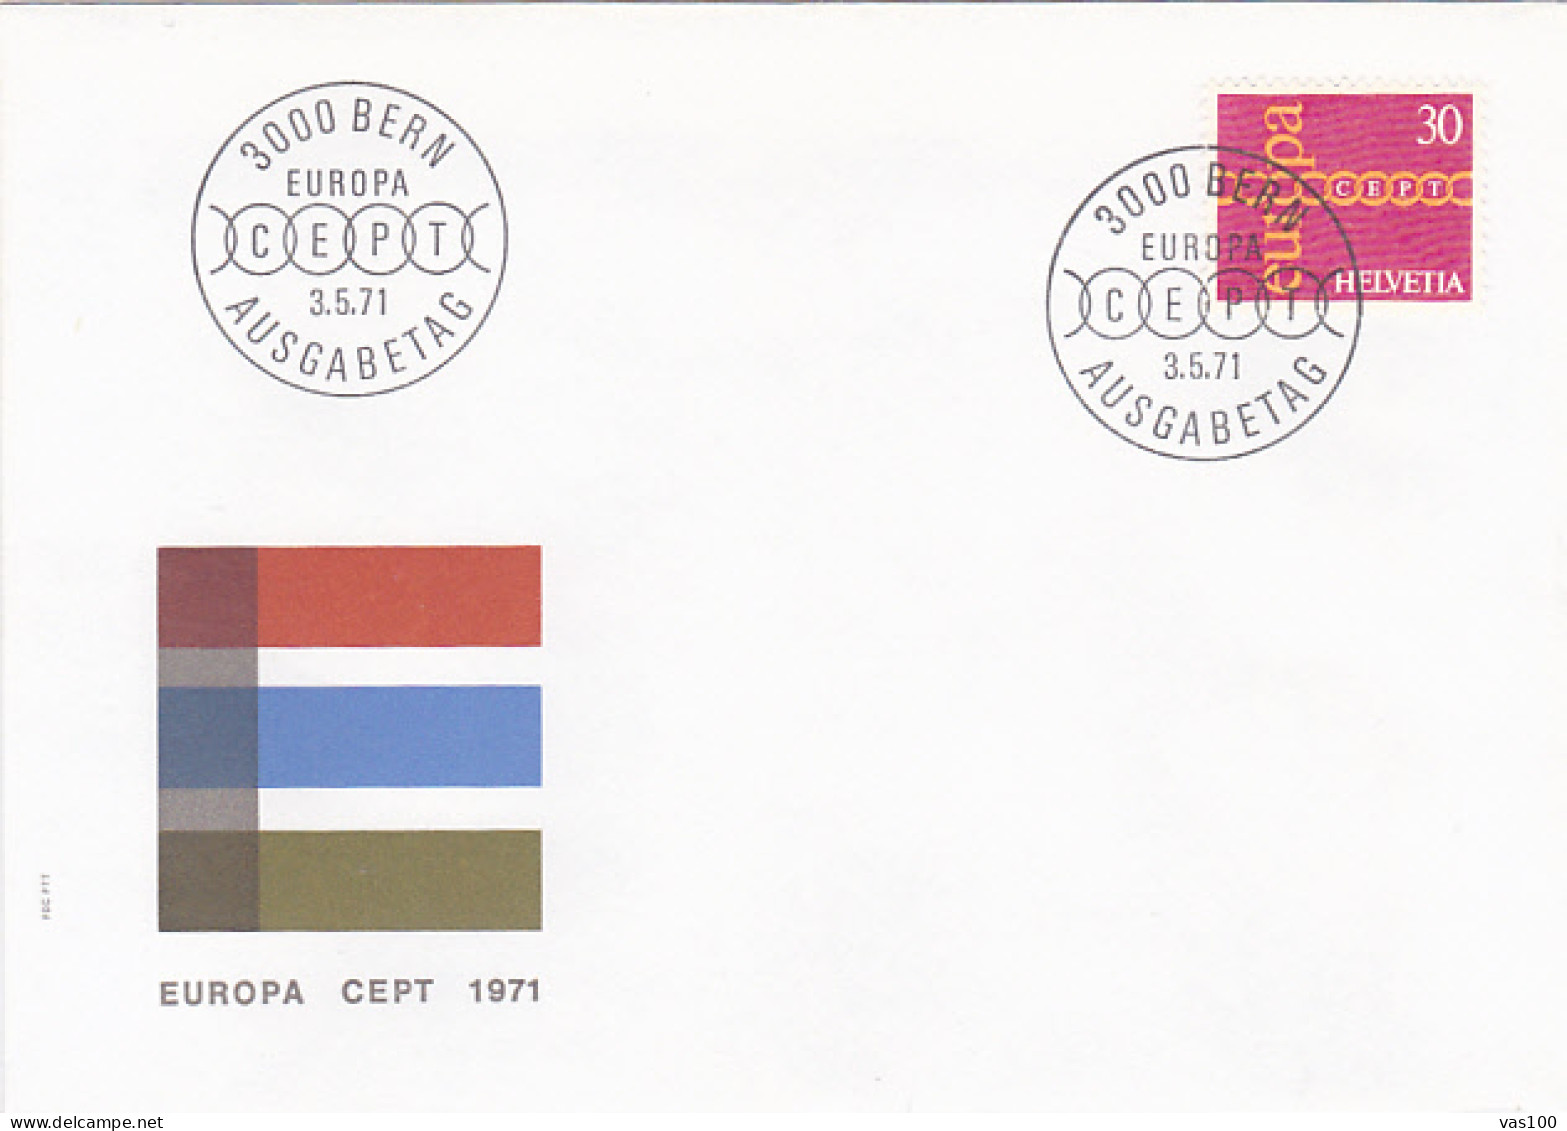 EUROPA CEPT, COVER FDC, 1971, SWITZERLAND - 1971